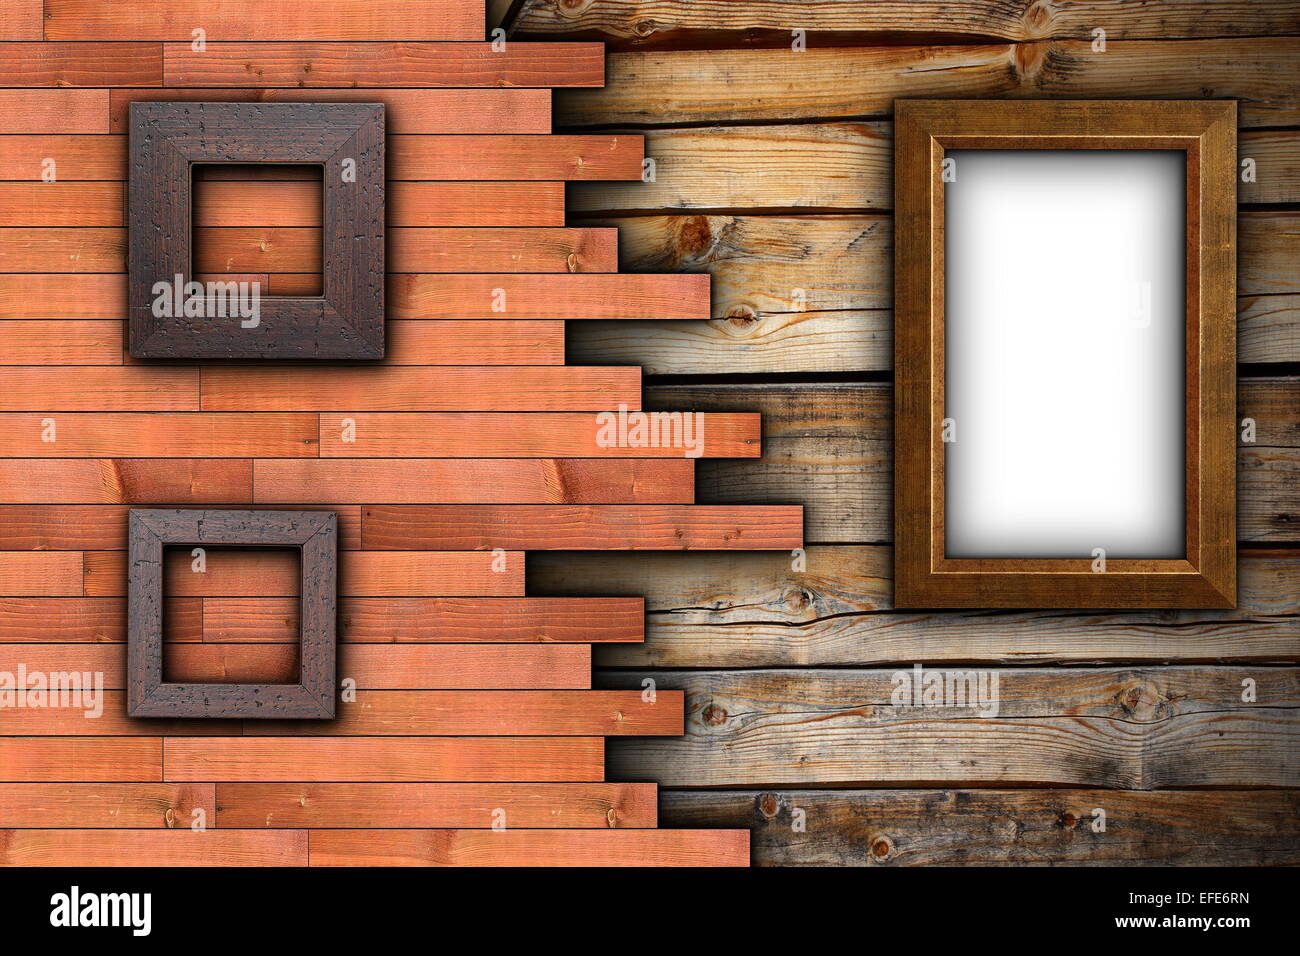 Abstract sfondo di legno con cornici vuote sulla parete pronto per il tuo progetto o la pubblicità Foto Stock